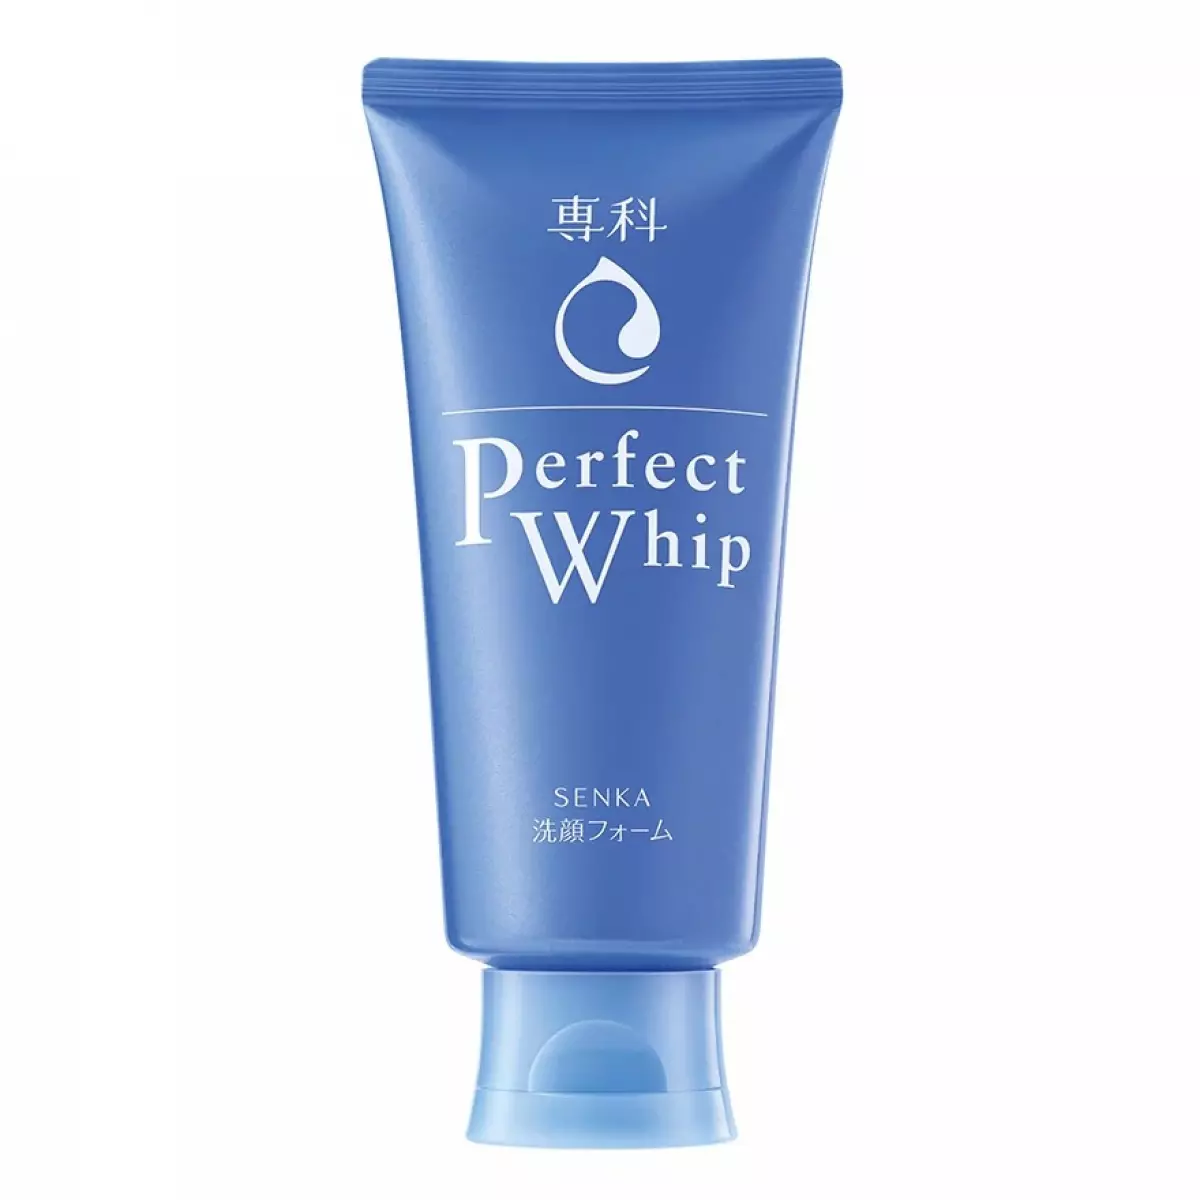 Japanese Face Washes - Senka Perfect Whip